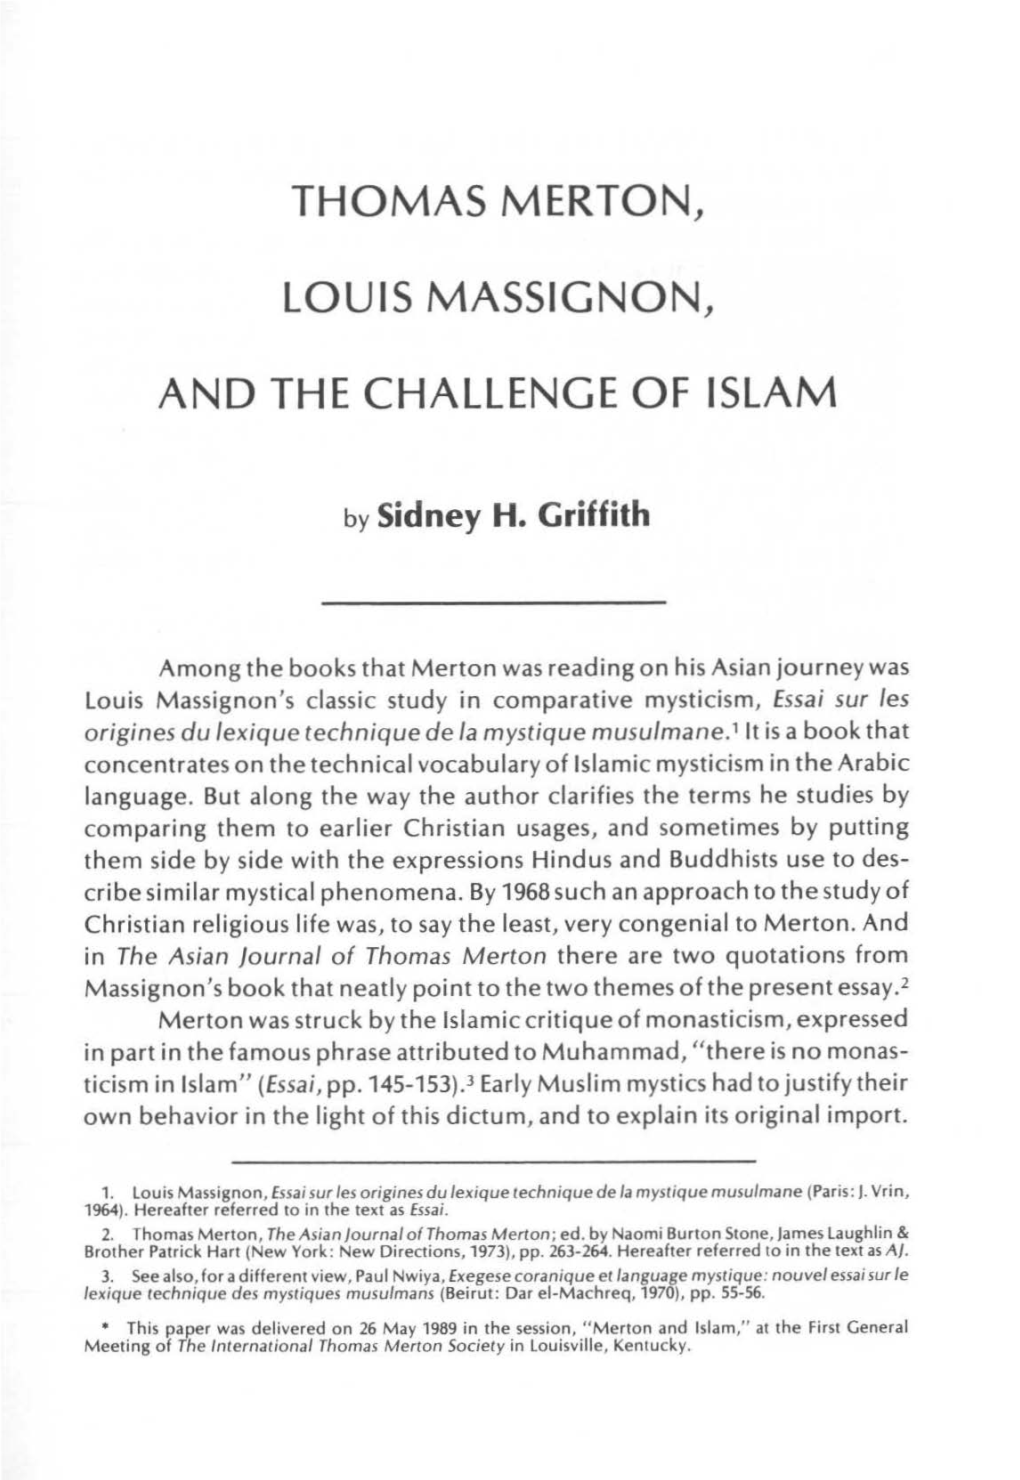 Thomas Merton, Louis Massignon, and The